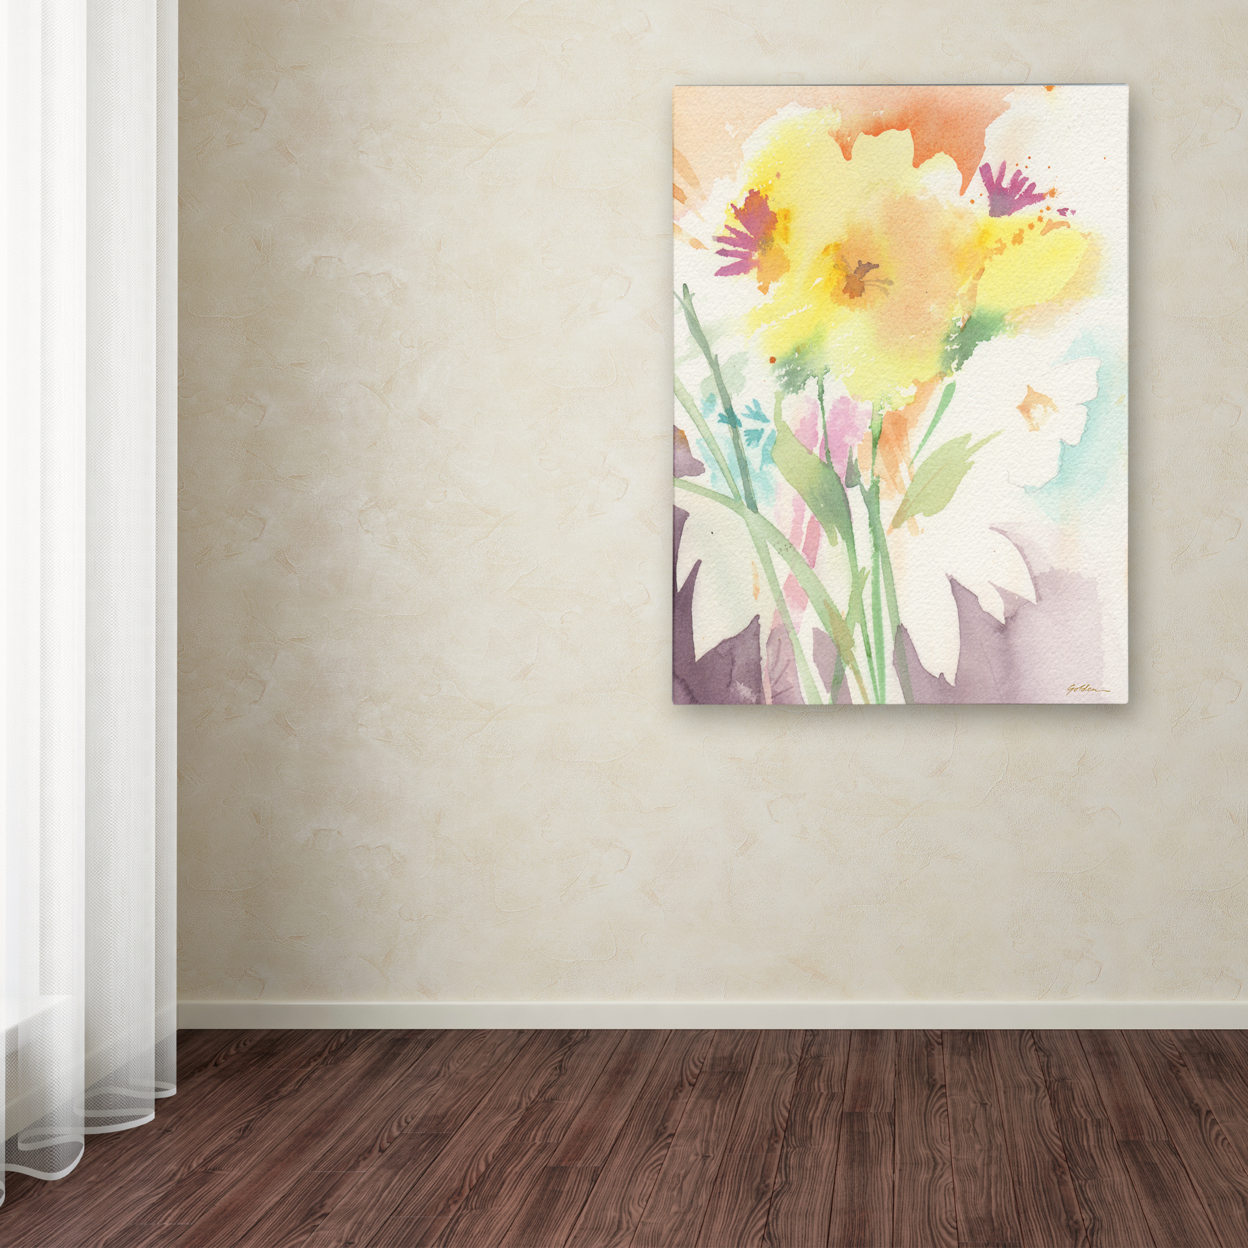 Sheila Golden 'Yellow Flower Blossoming' Canvas Art 18 X 24